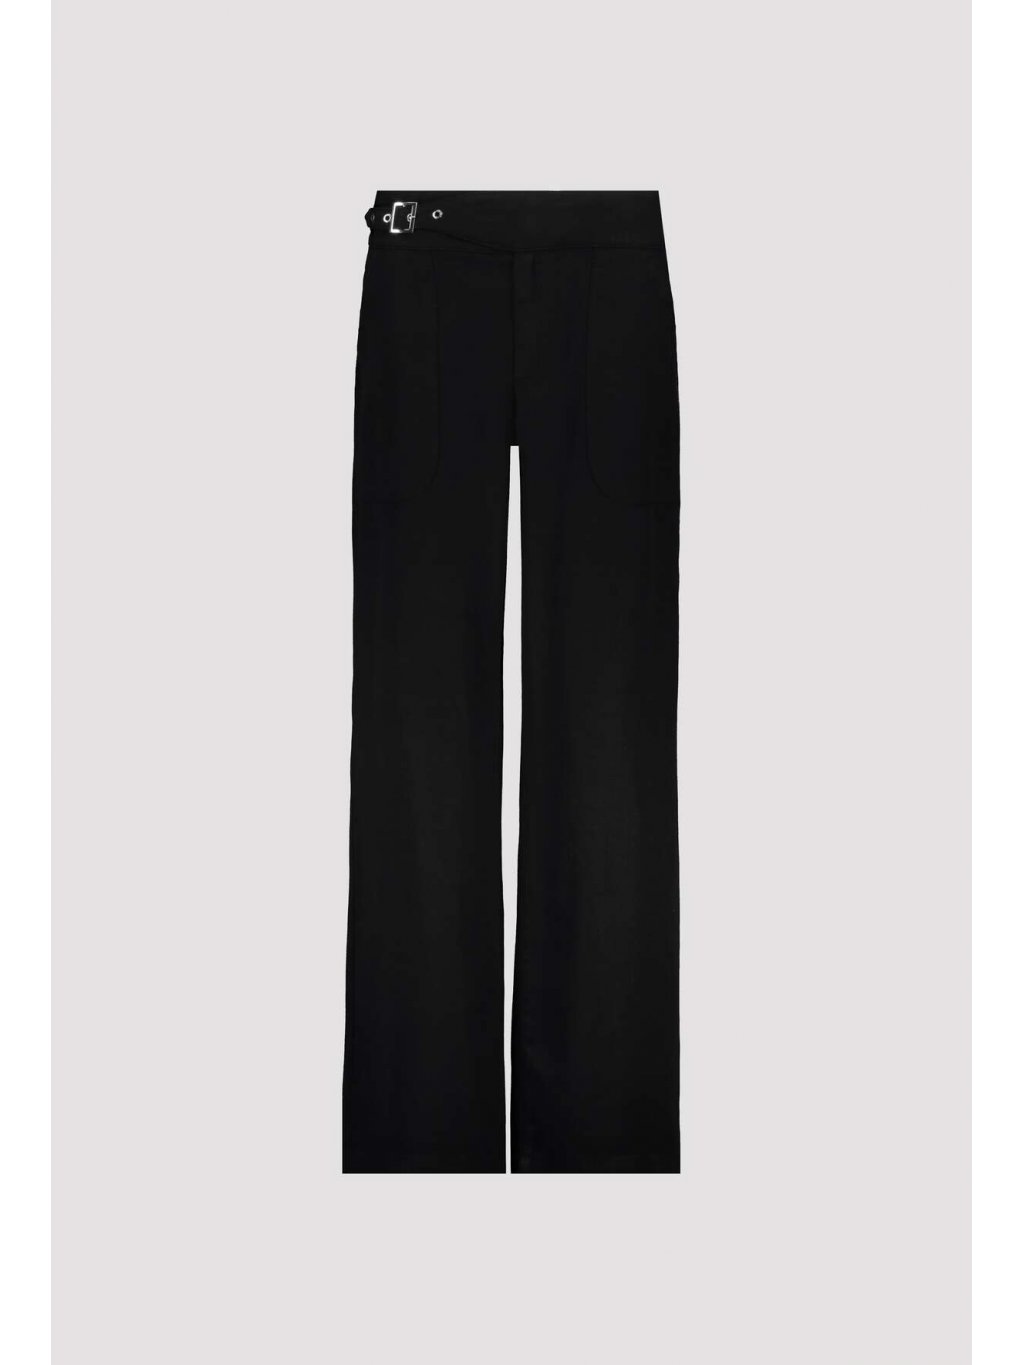 Kalhoty Monari 7910 černé široké volné